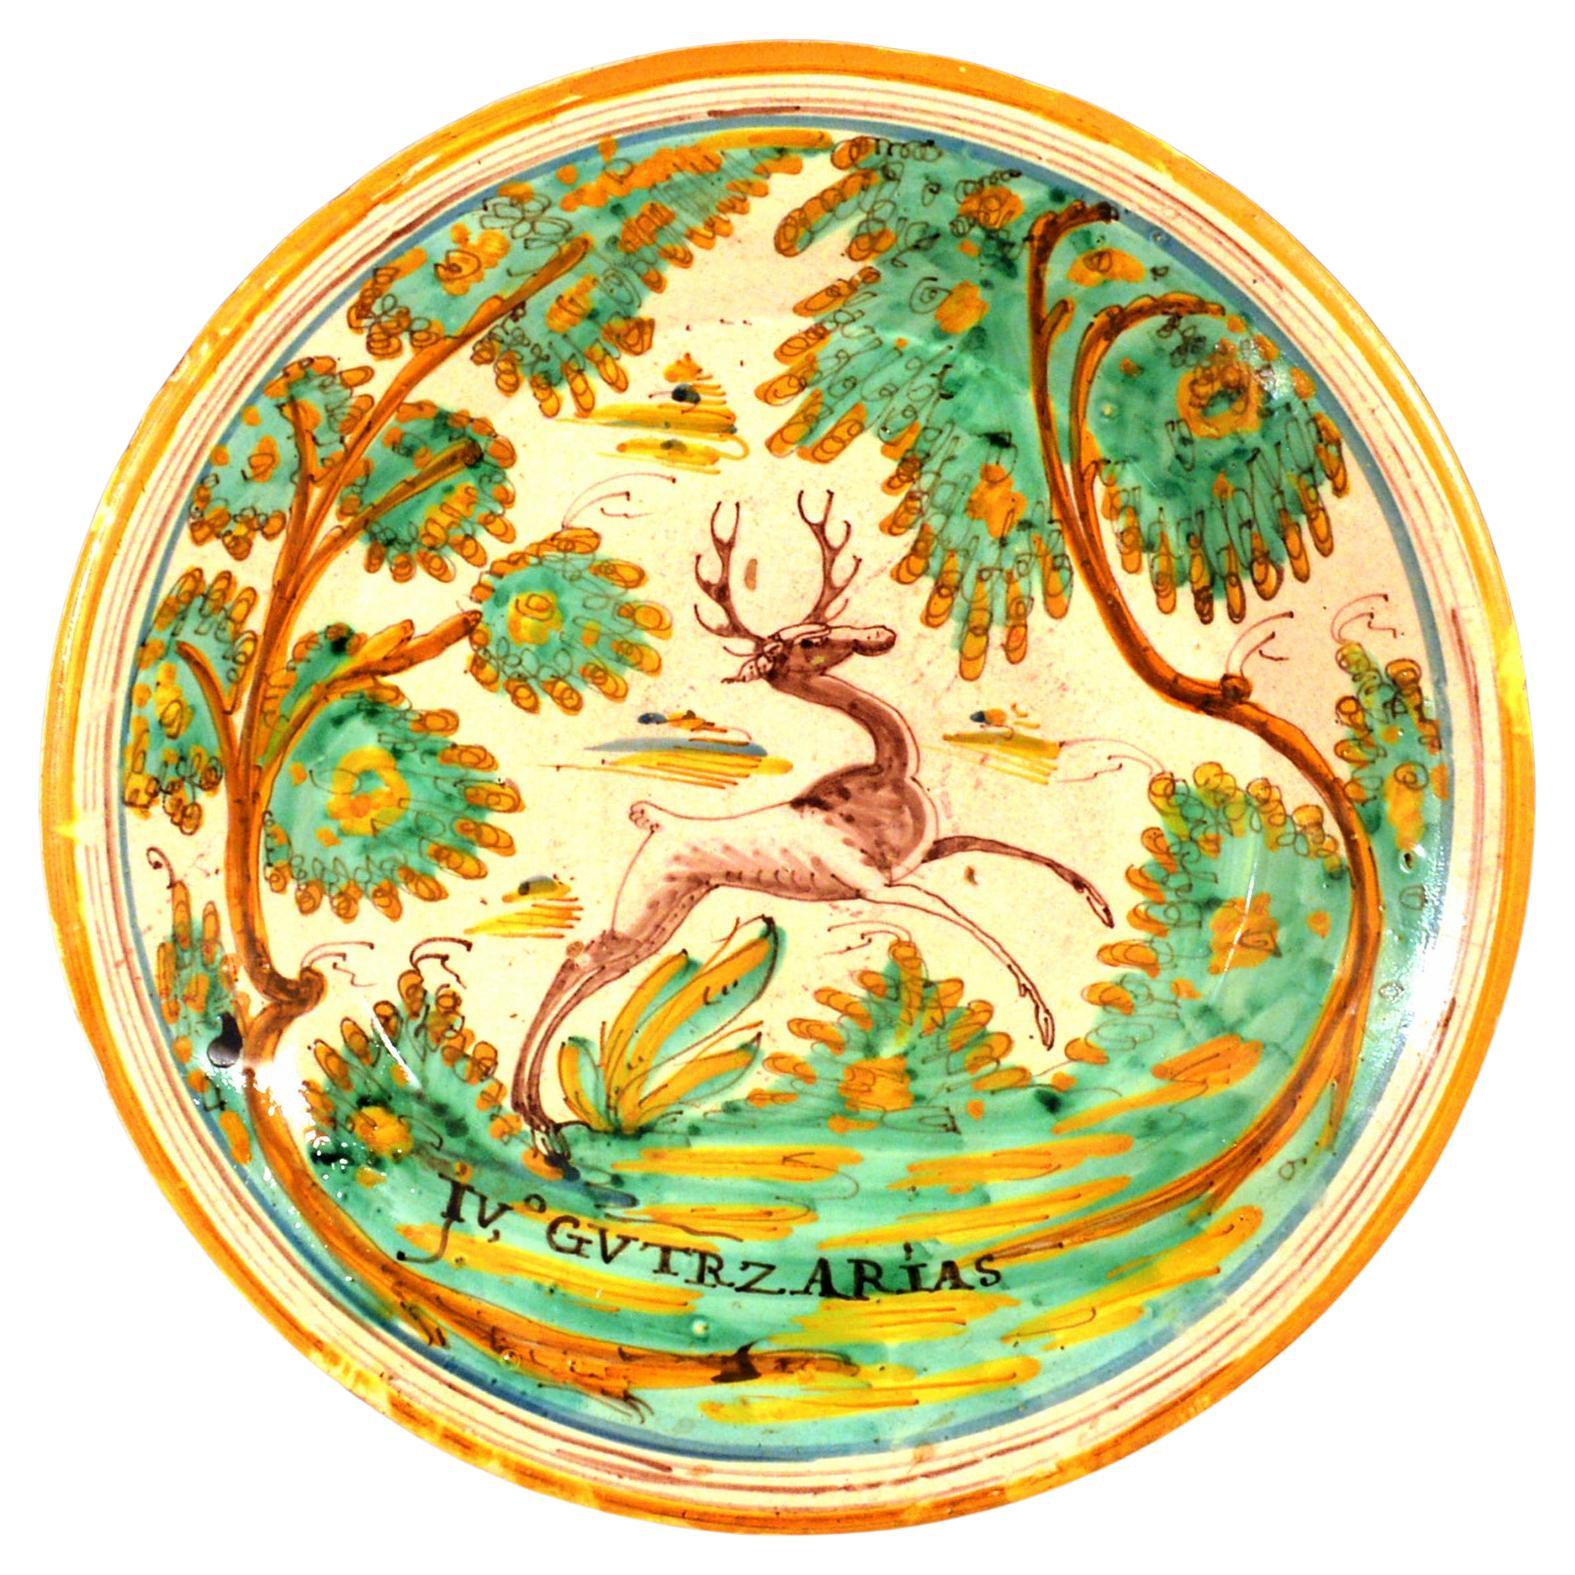 Chargeur en faïence espagnole avec cerf bondissant, Talavera, vers 1780-1800